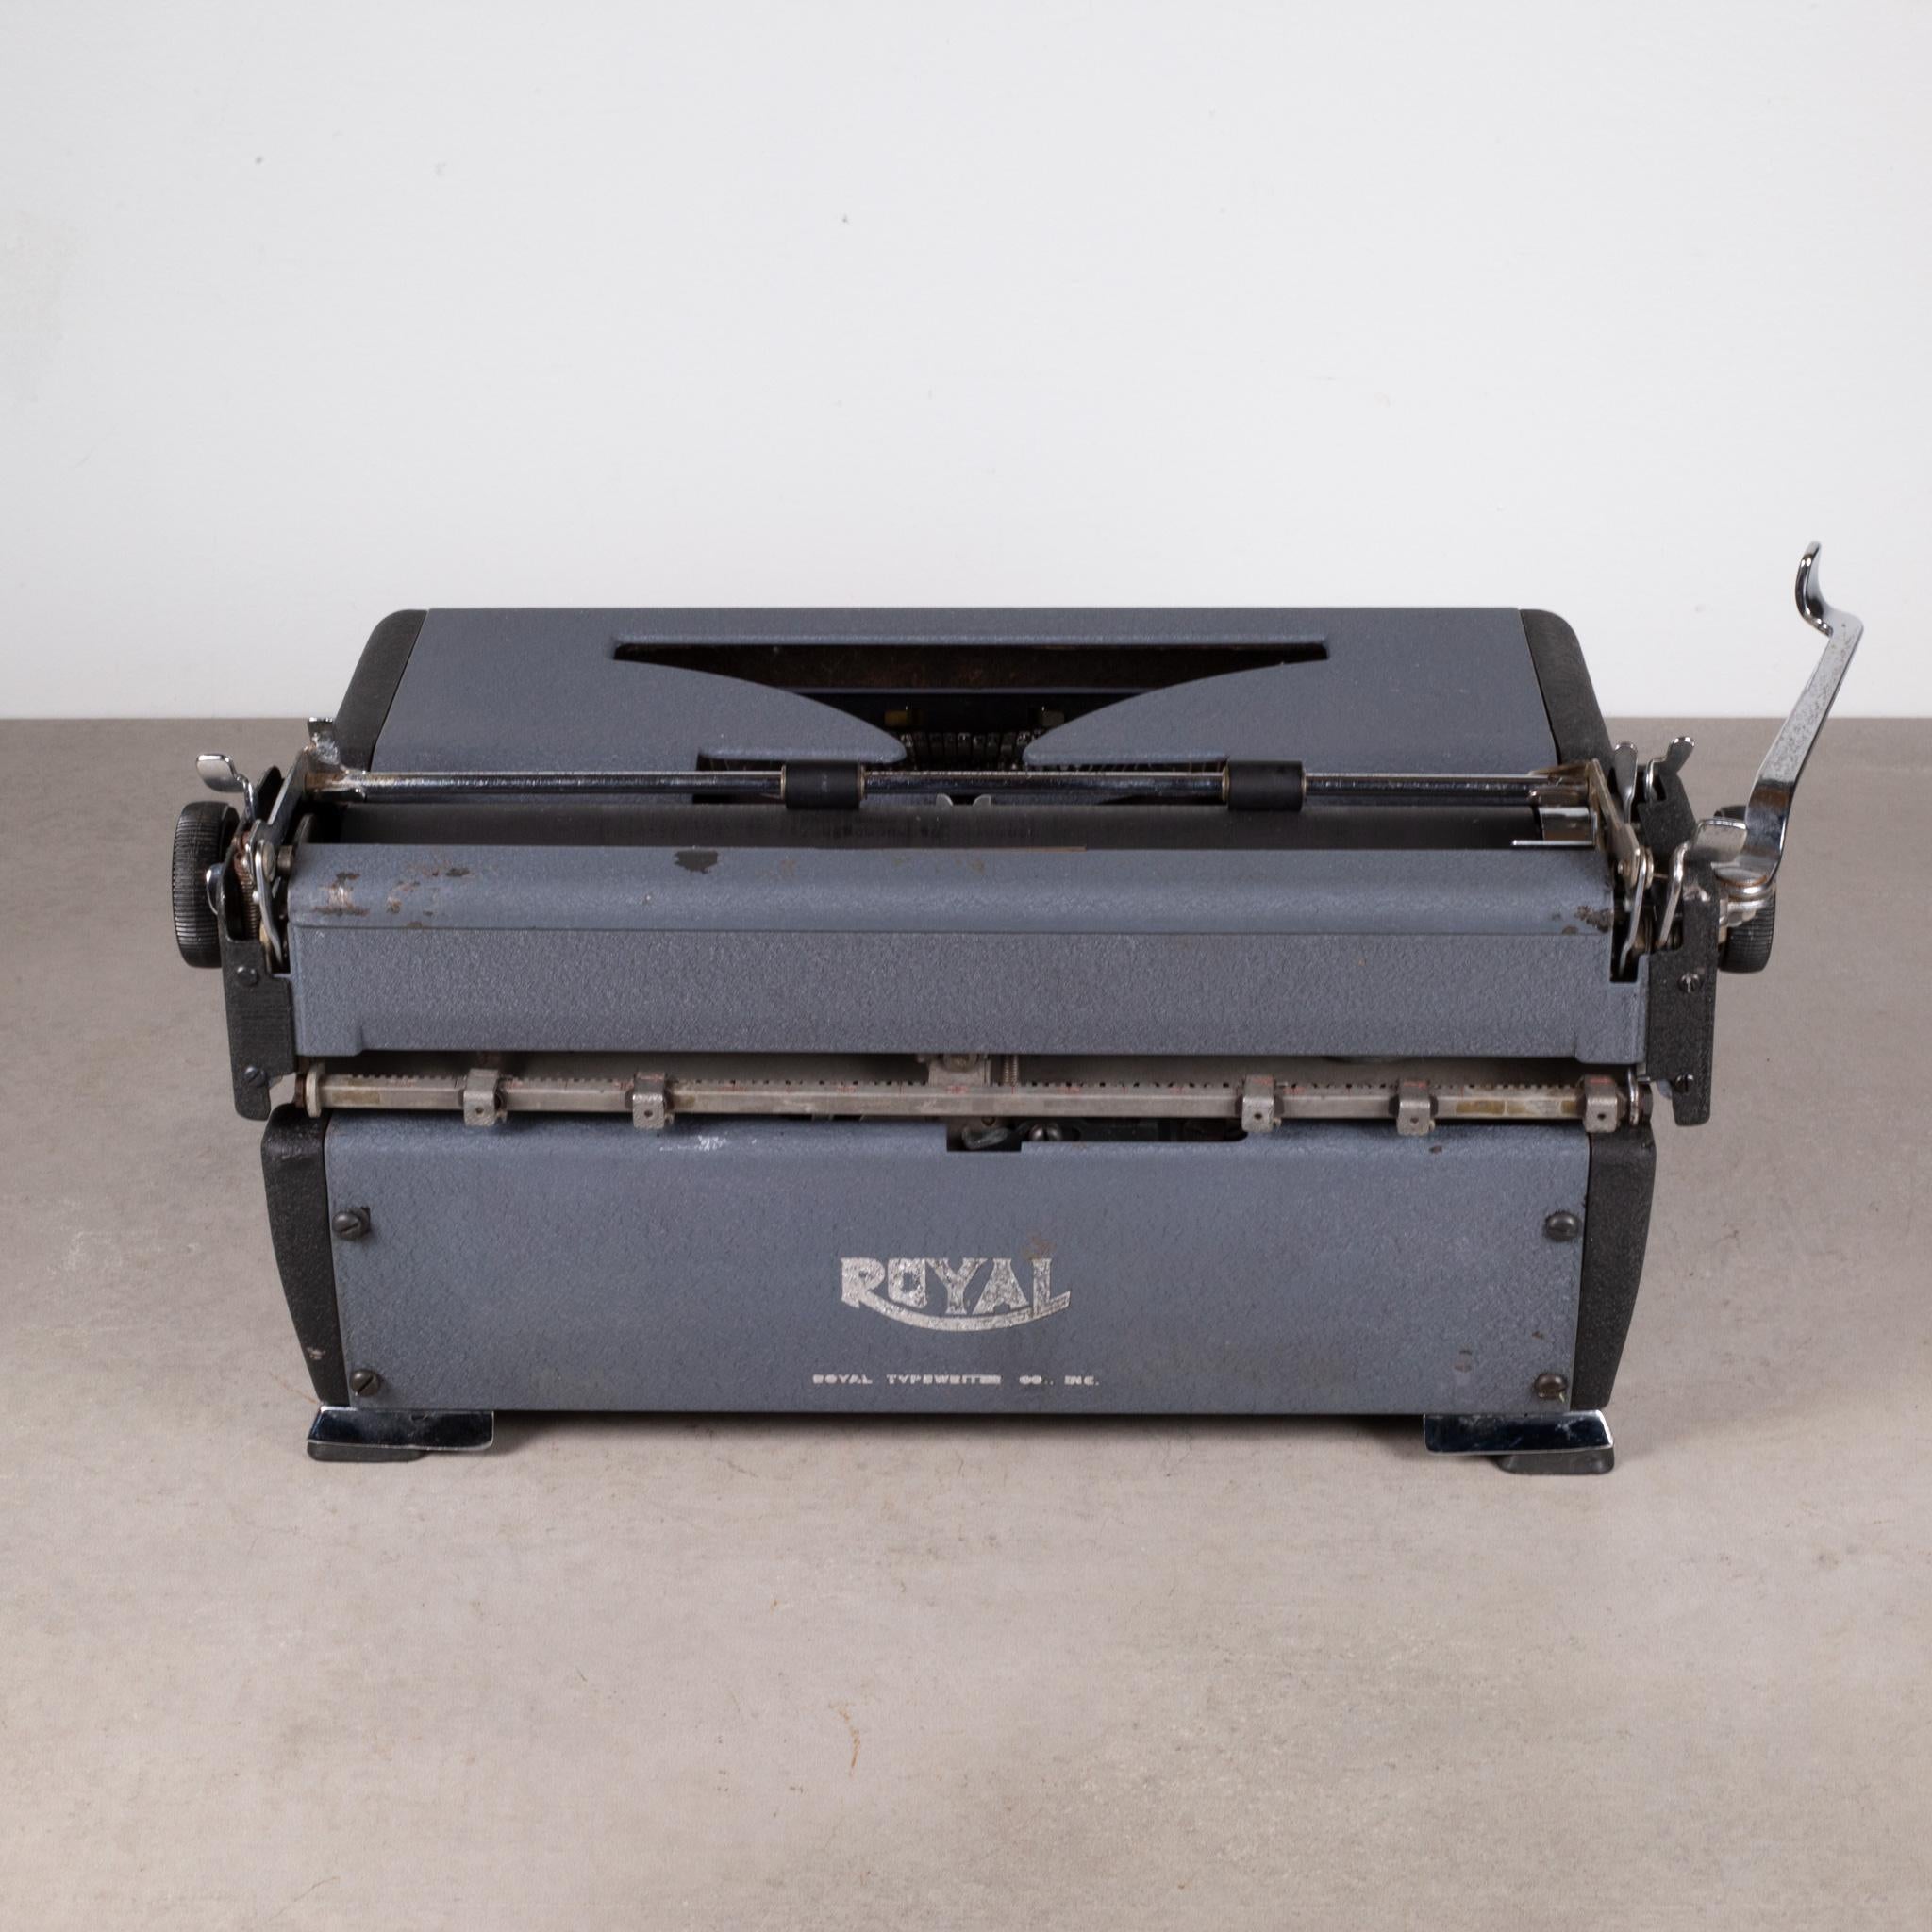 Royal Quiet DeLuxe Two Tone Typewriter und Koffer, um 1948  (KOSTENLOSER VERSAND) (20. Jahrhundert)